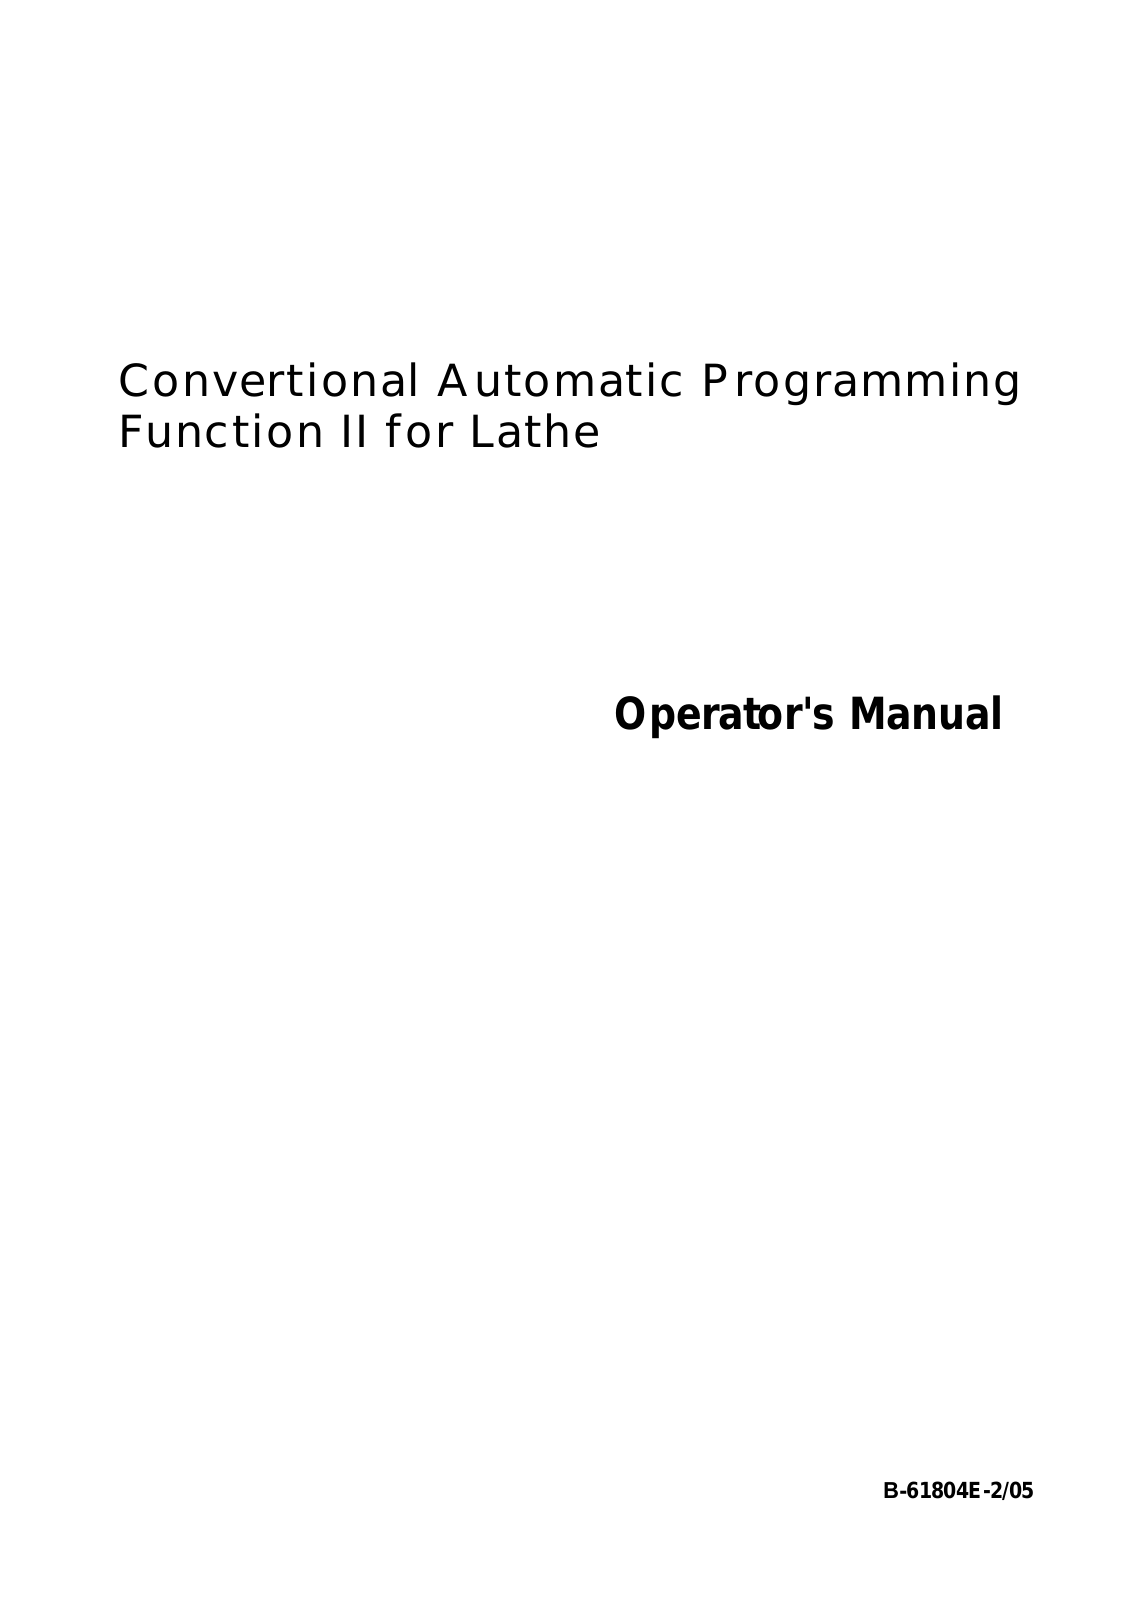 FANUC B-61804E-2-05 Operator's Manual